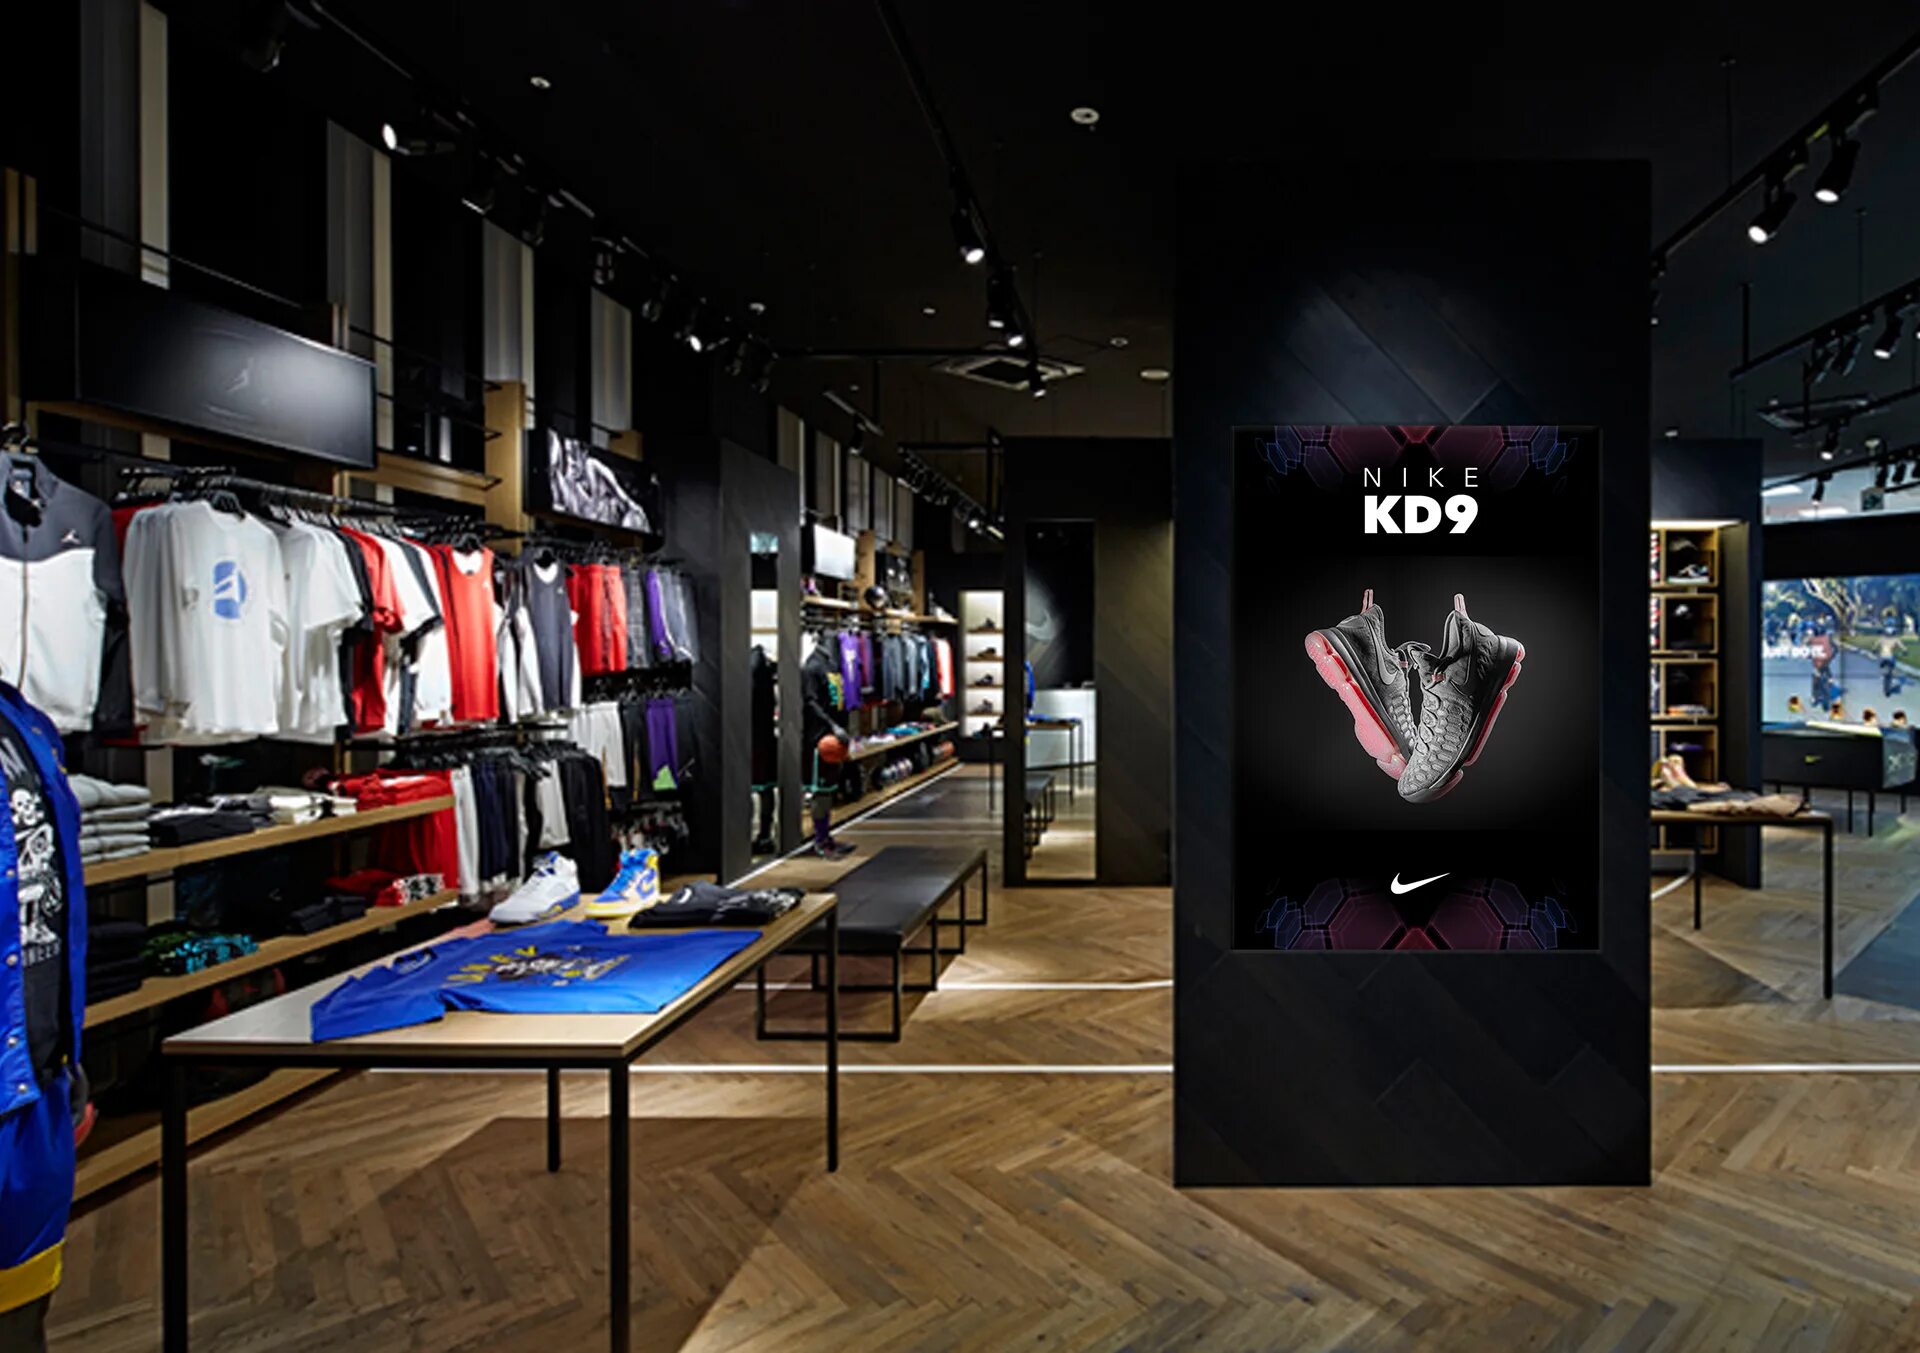 Honc5 shop. Nike Store. Фирменный магазин найк. Nike Jordan Boutique. Интерьер магазина одежды.